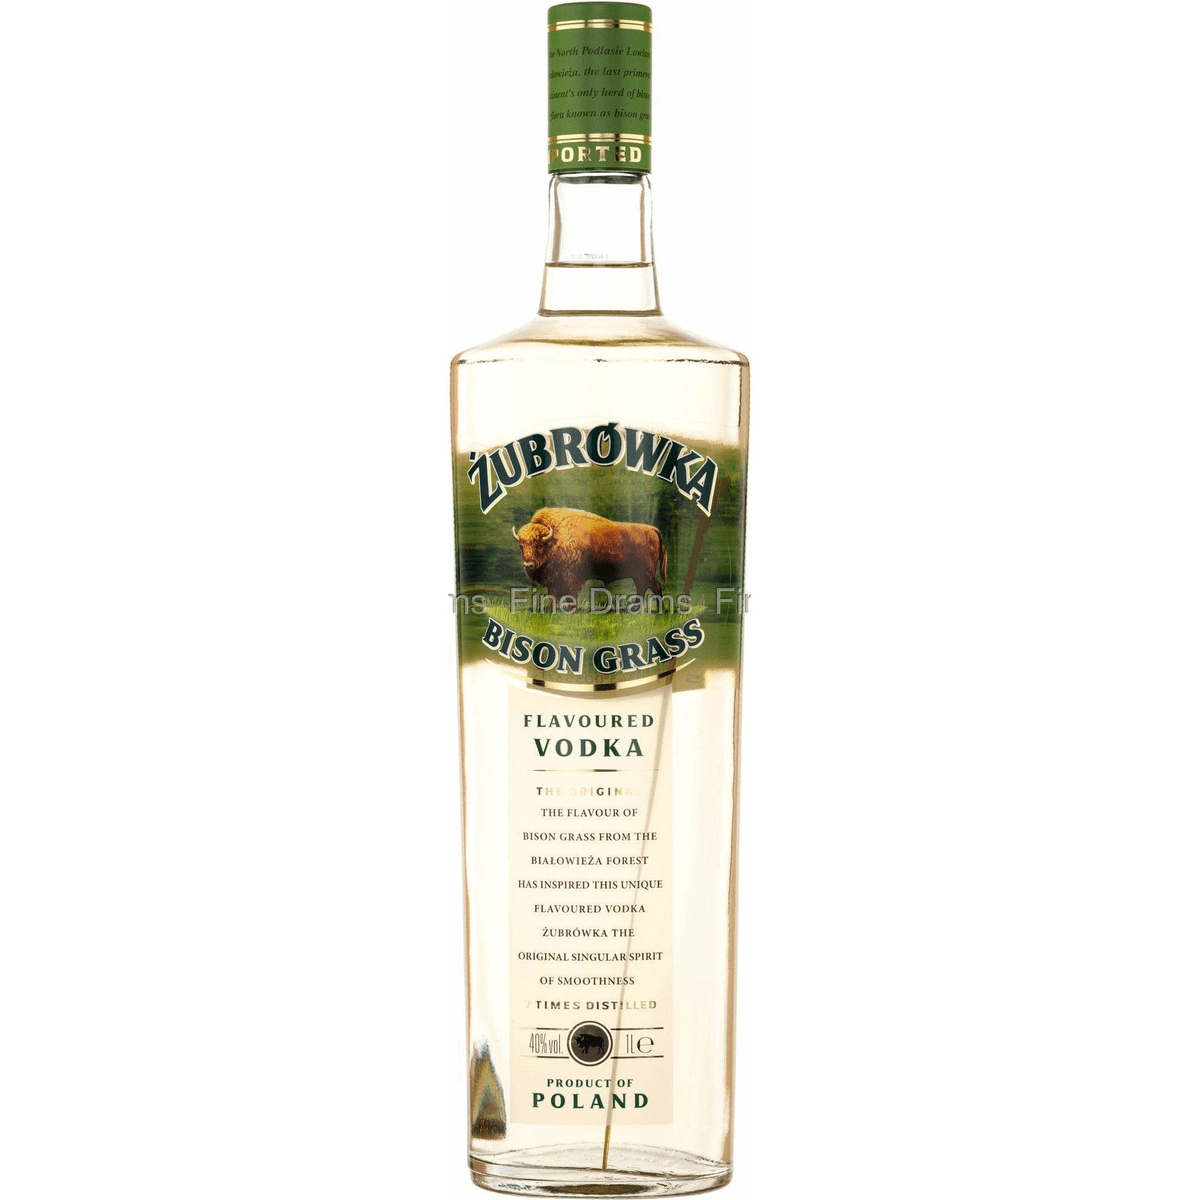 40% Winebuyers Flavoured Vodka 1L Zubrowka Bison Grass Vol. |